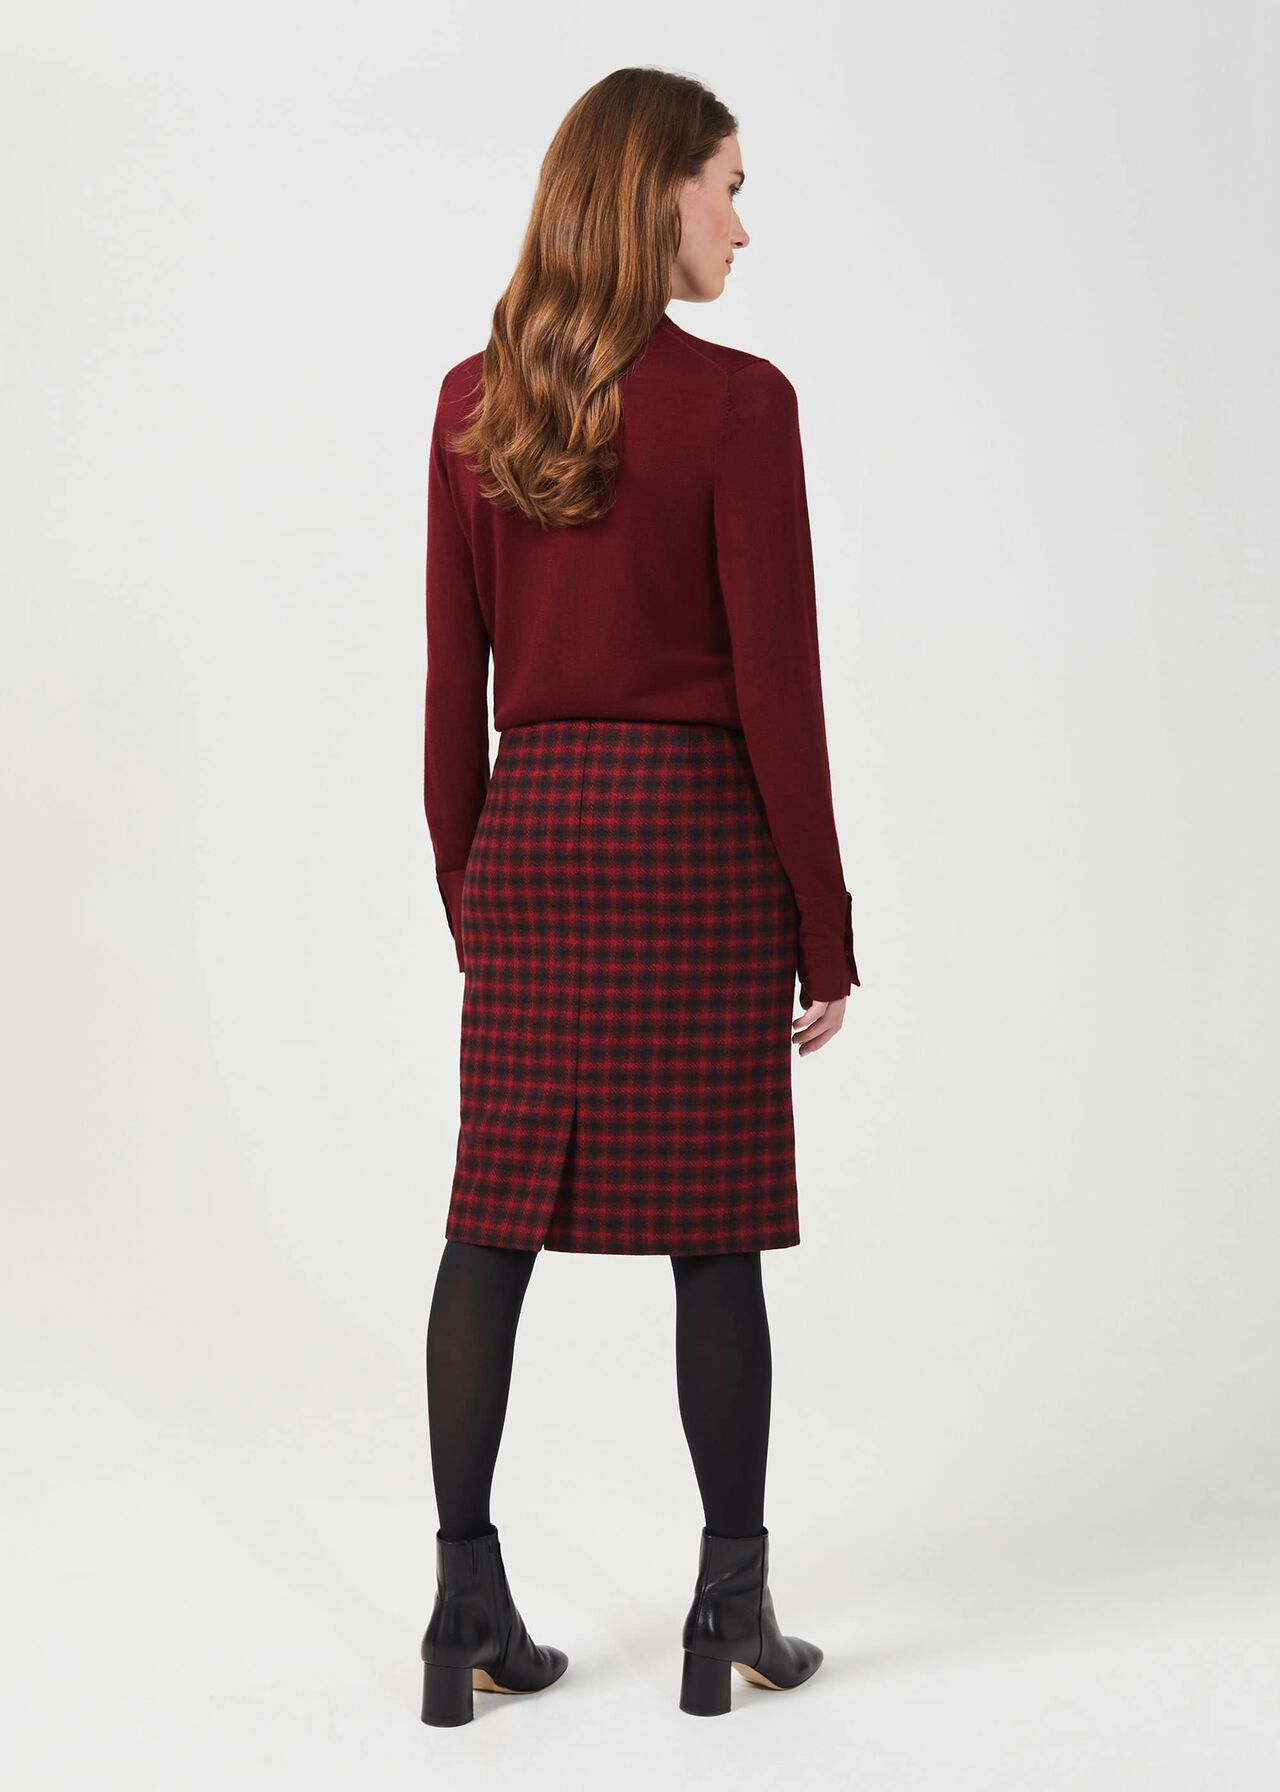 Daphne Skirt, Red Black, hi-res